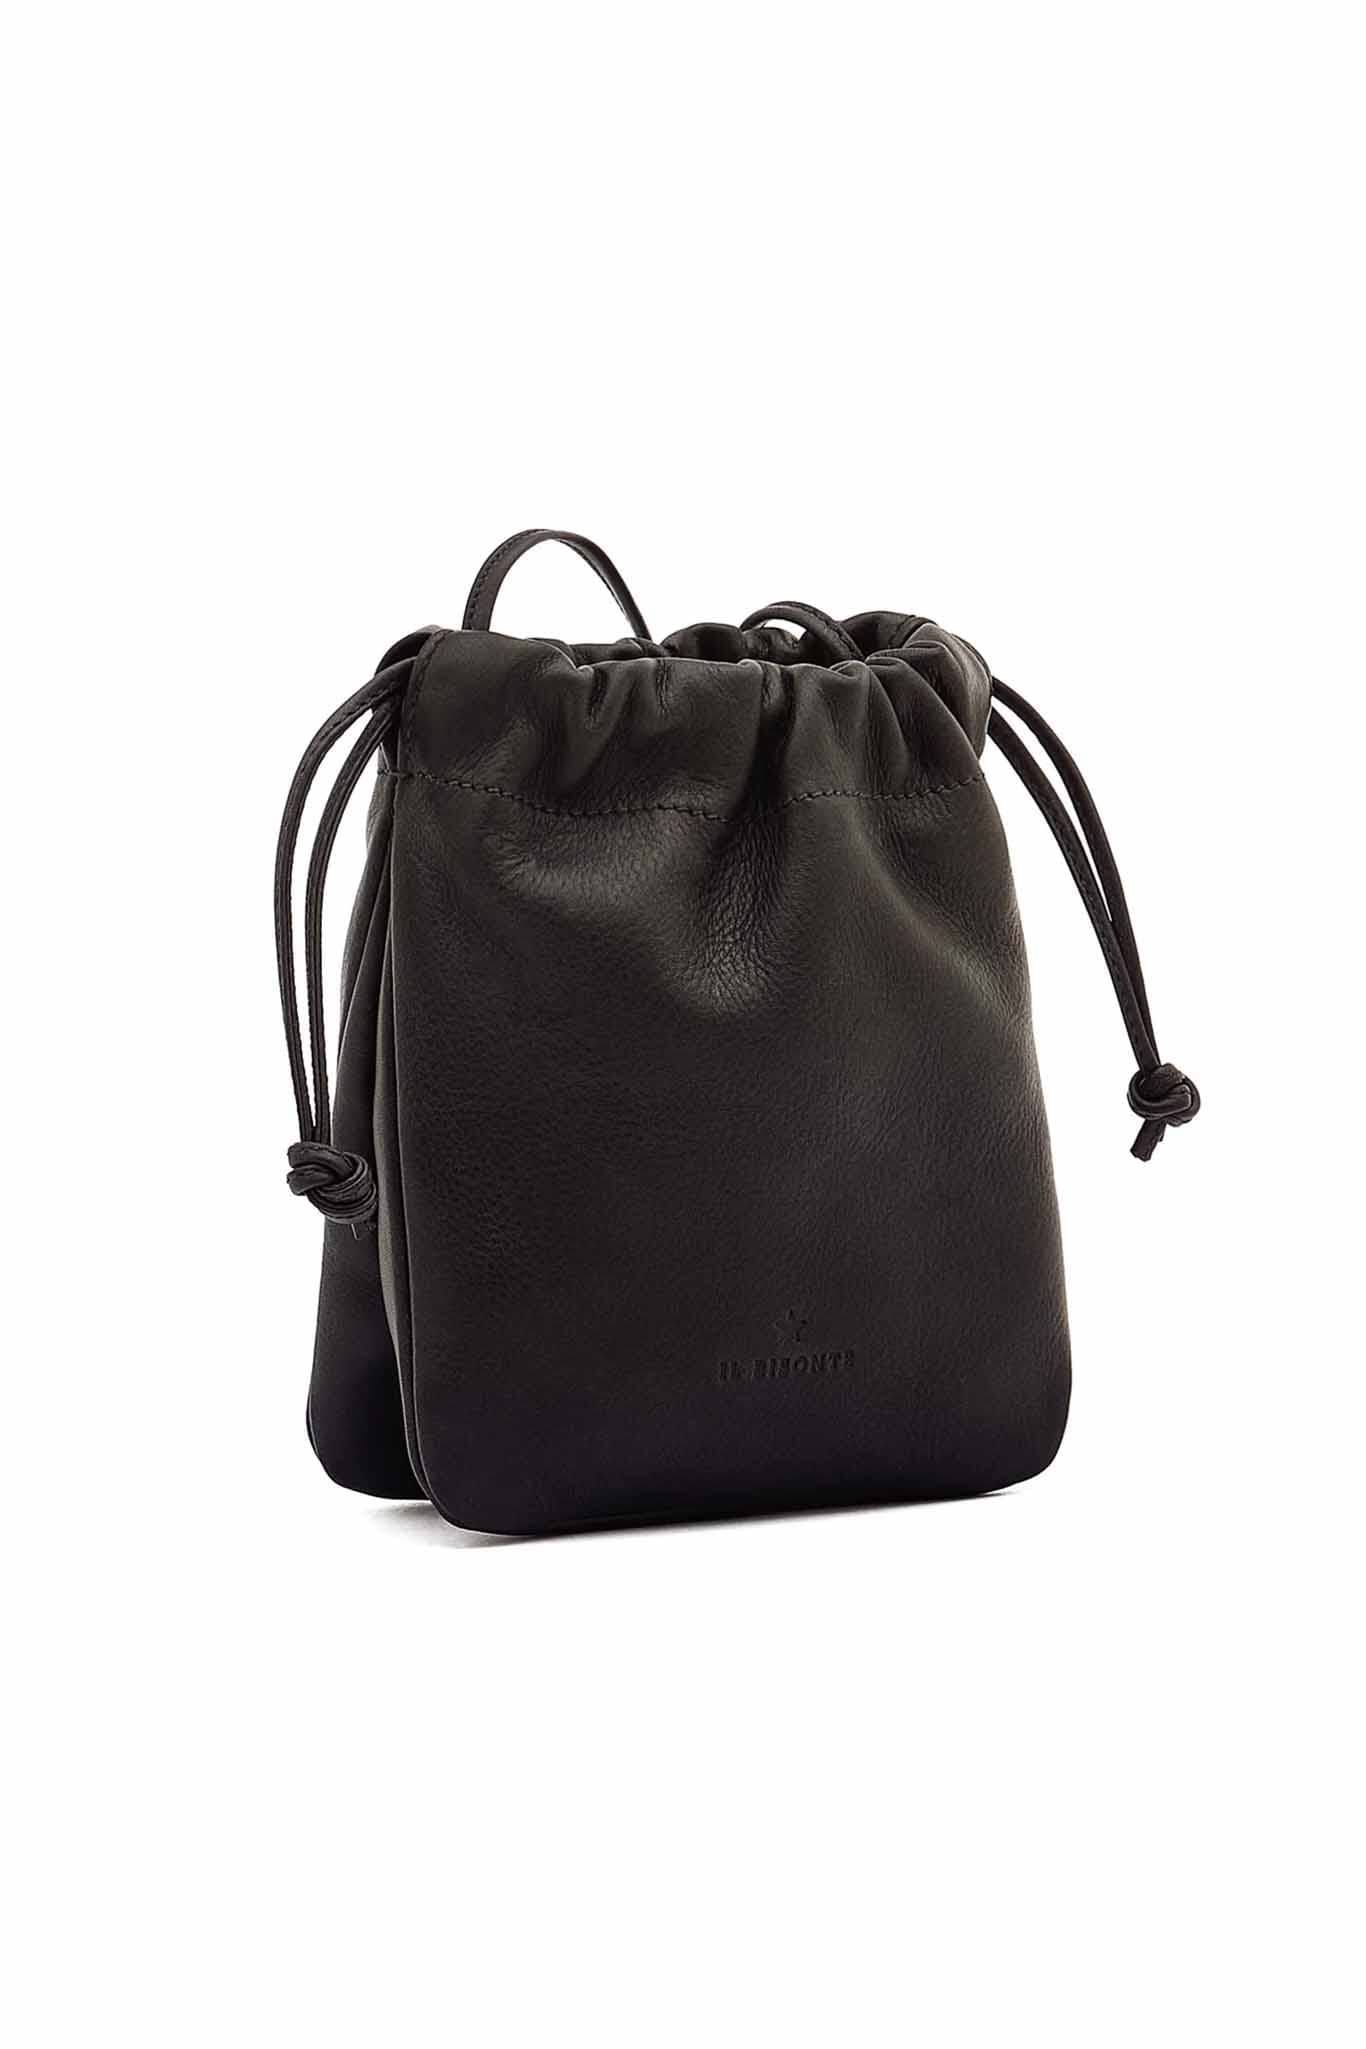 Il Bisonte Bellini Small Bucket Bag - Black